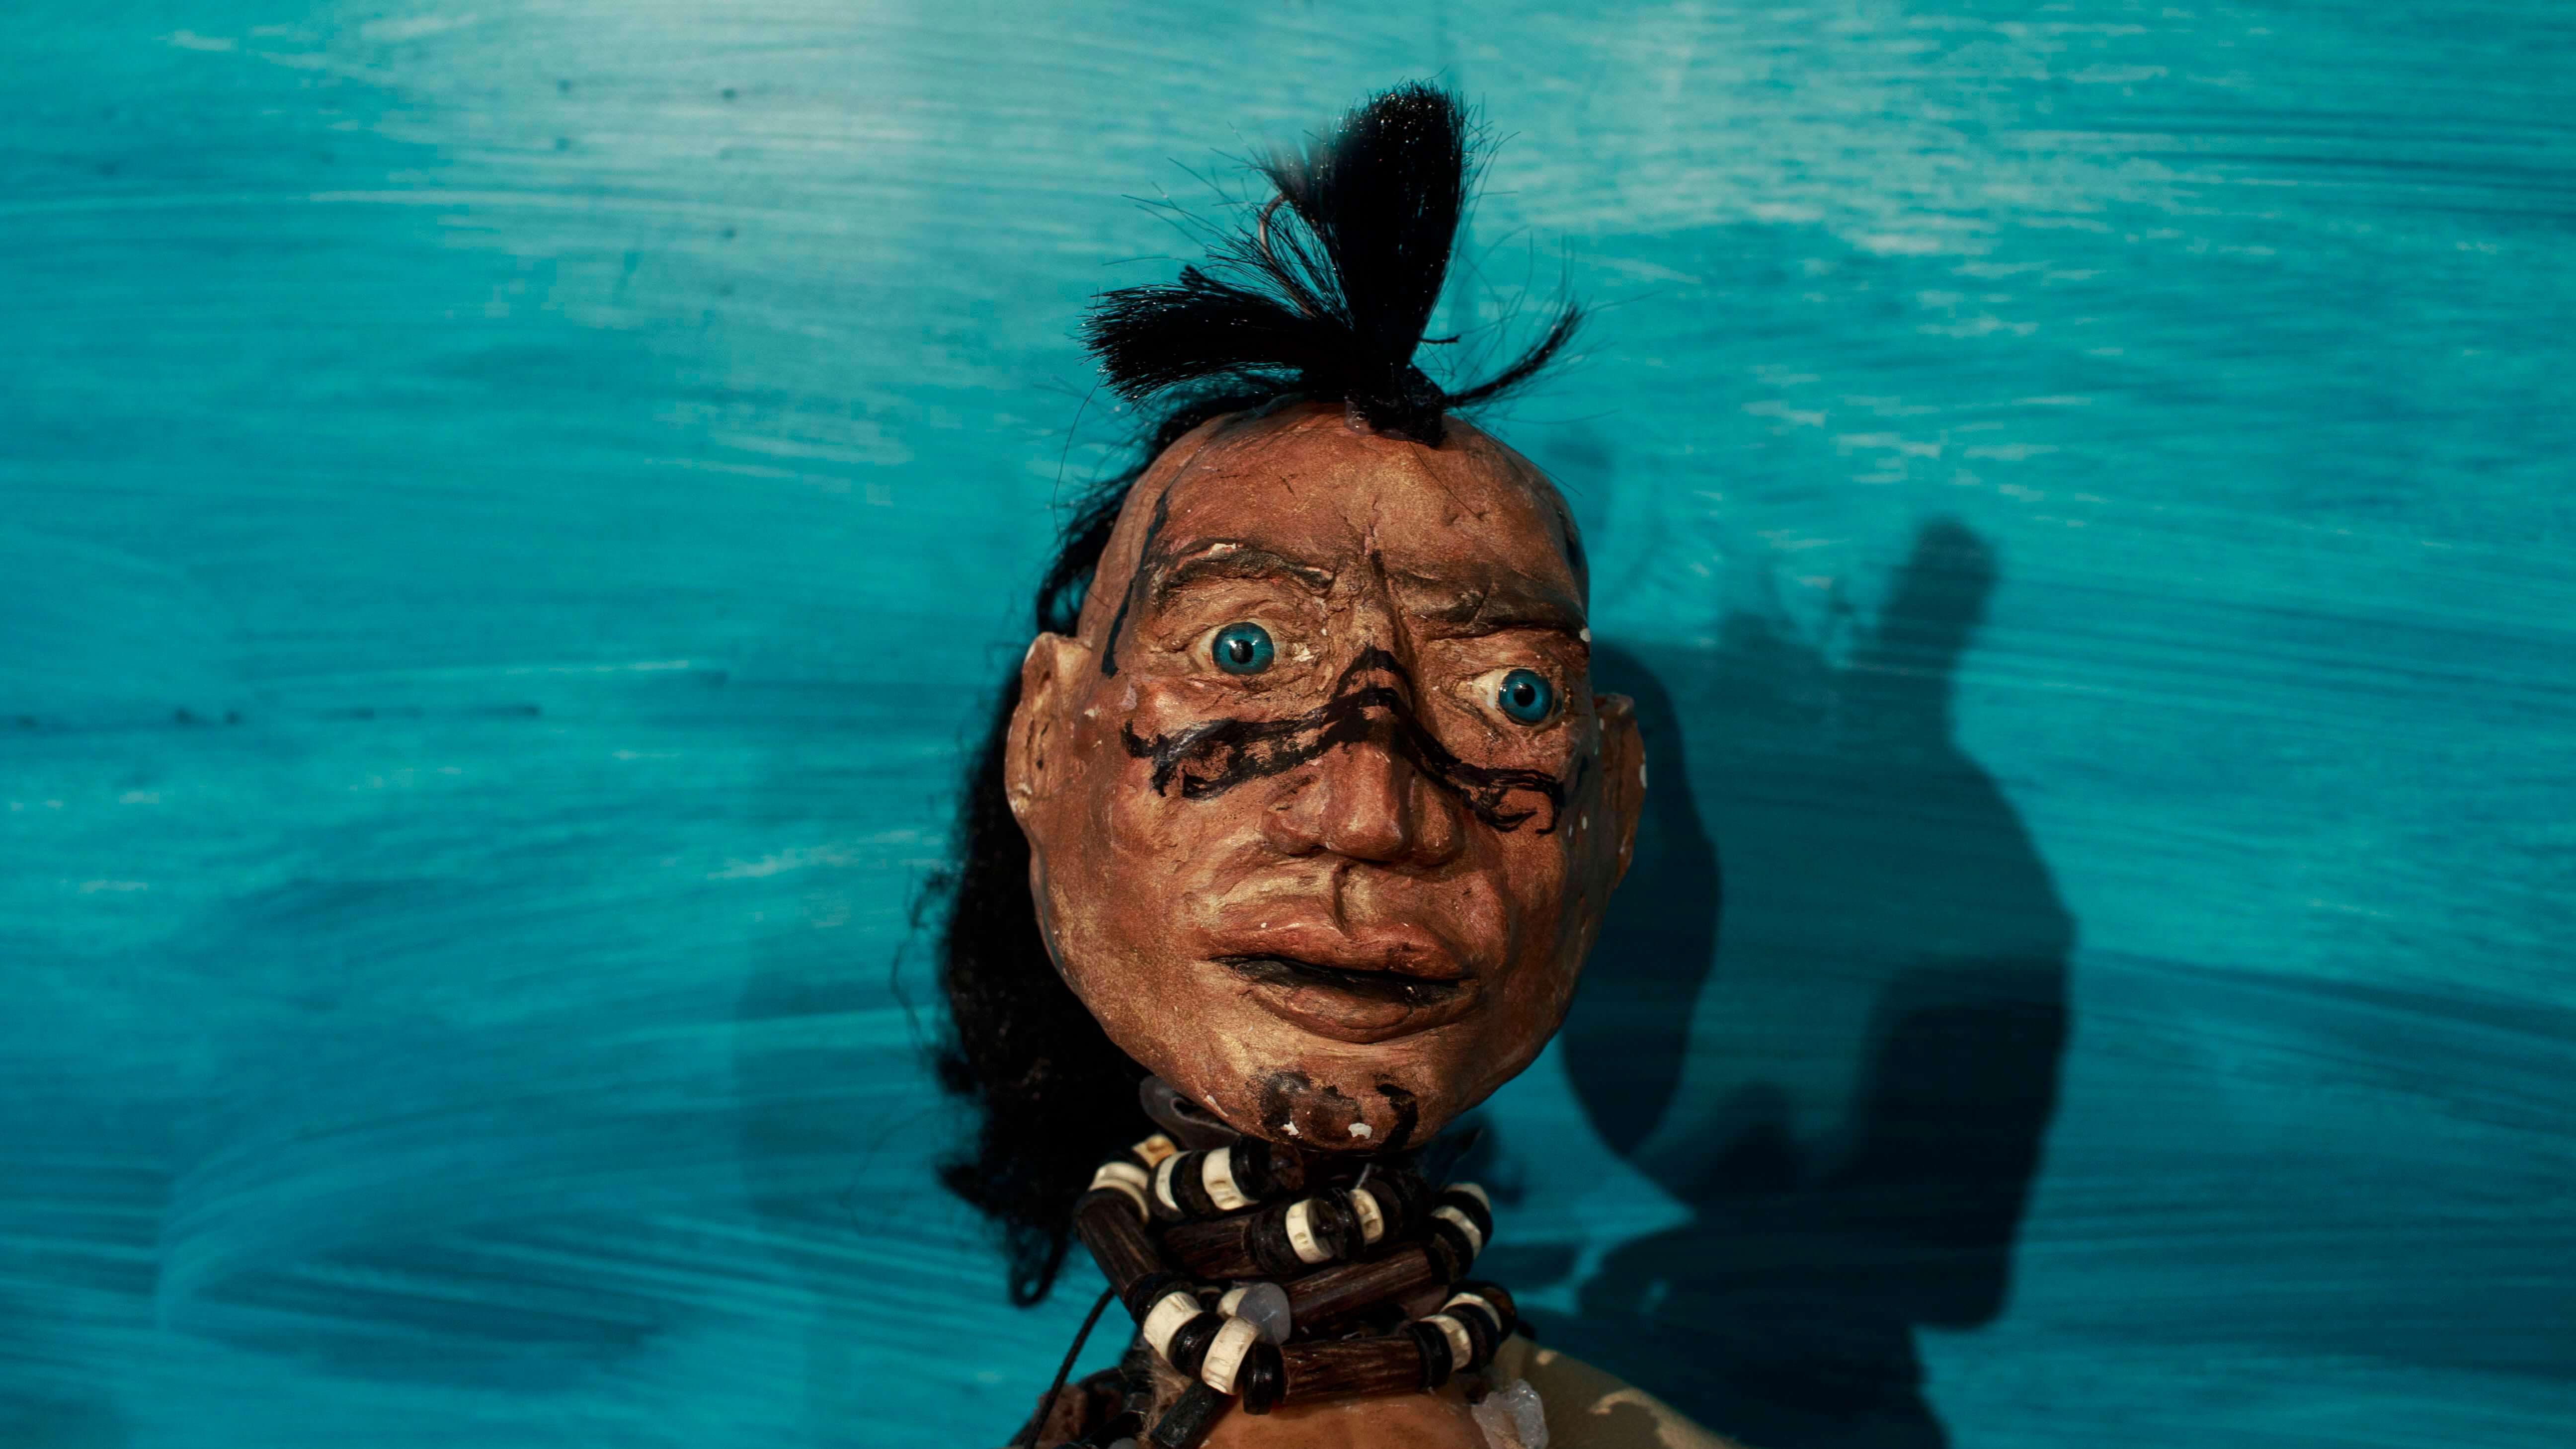 głowa lalki o ciemnym kolorze skóry, czarnych włosach, i niebieskich oczach, na nosie i policzkach ma narysowane czarne znaki, włosy częścio związane na czubku głowy, na szyi korale, niebieskie tło